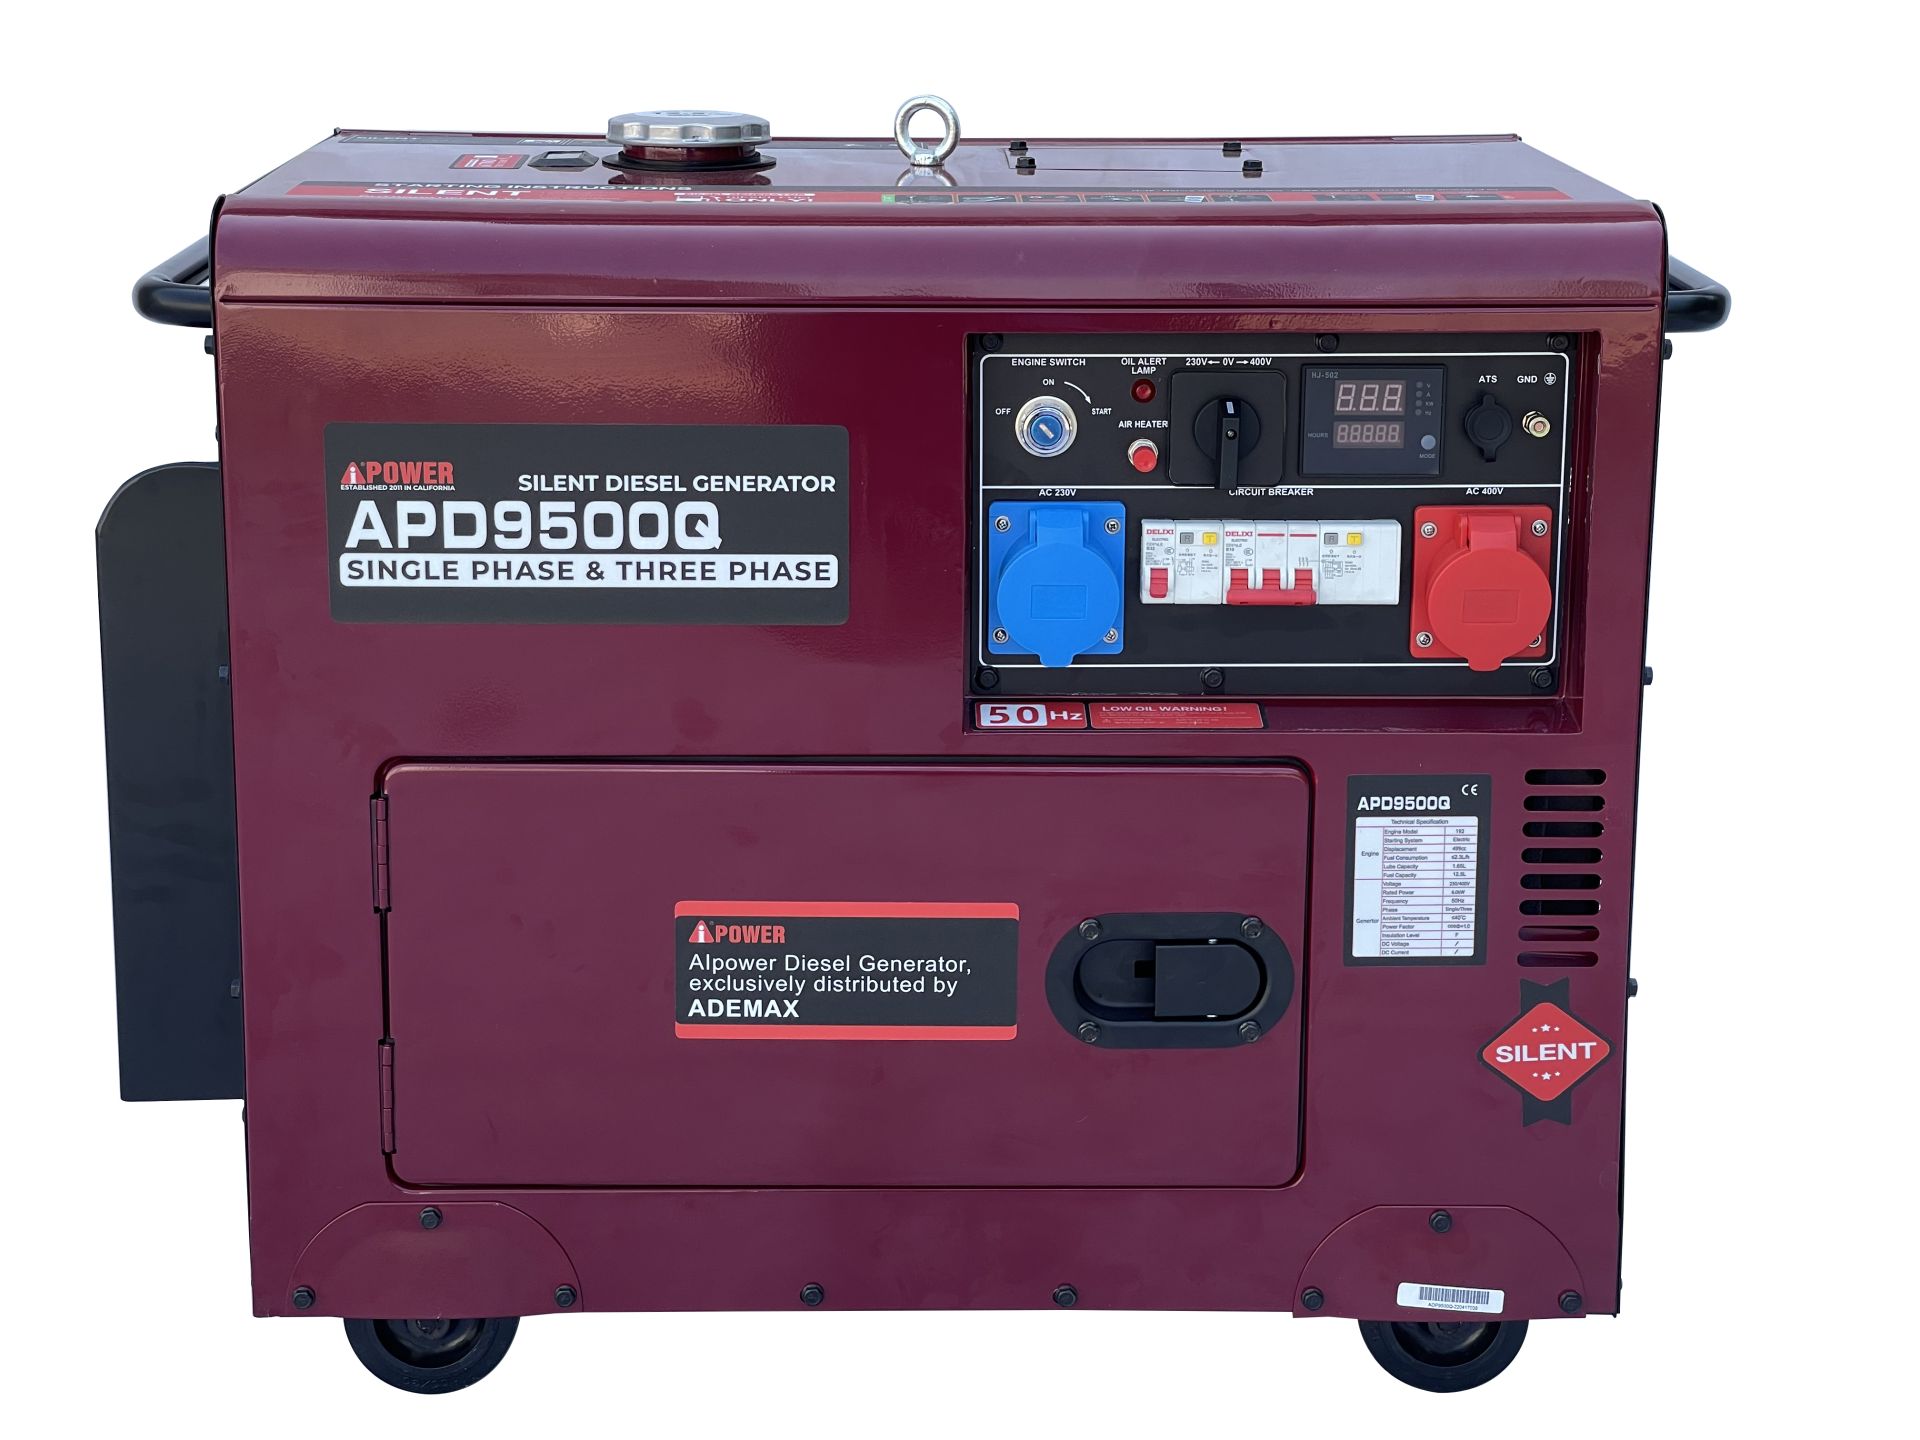 ATS BOX 80A für Diesel Stromaggregate 230V